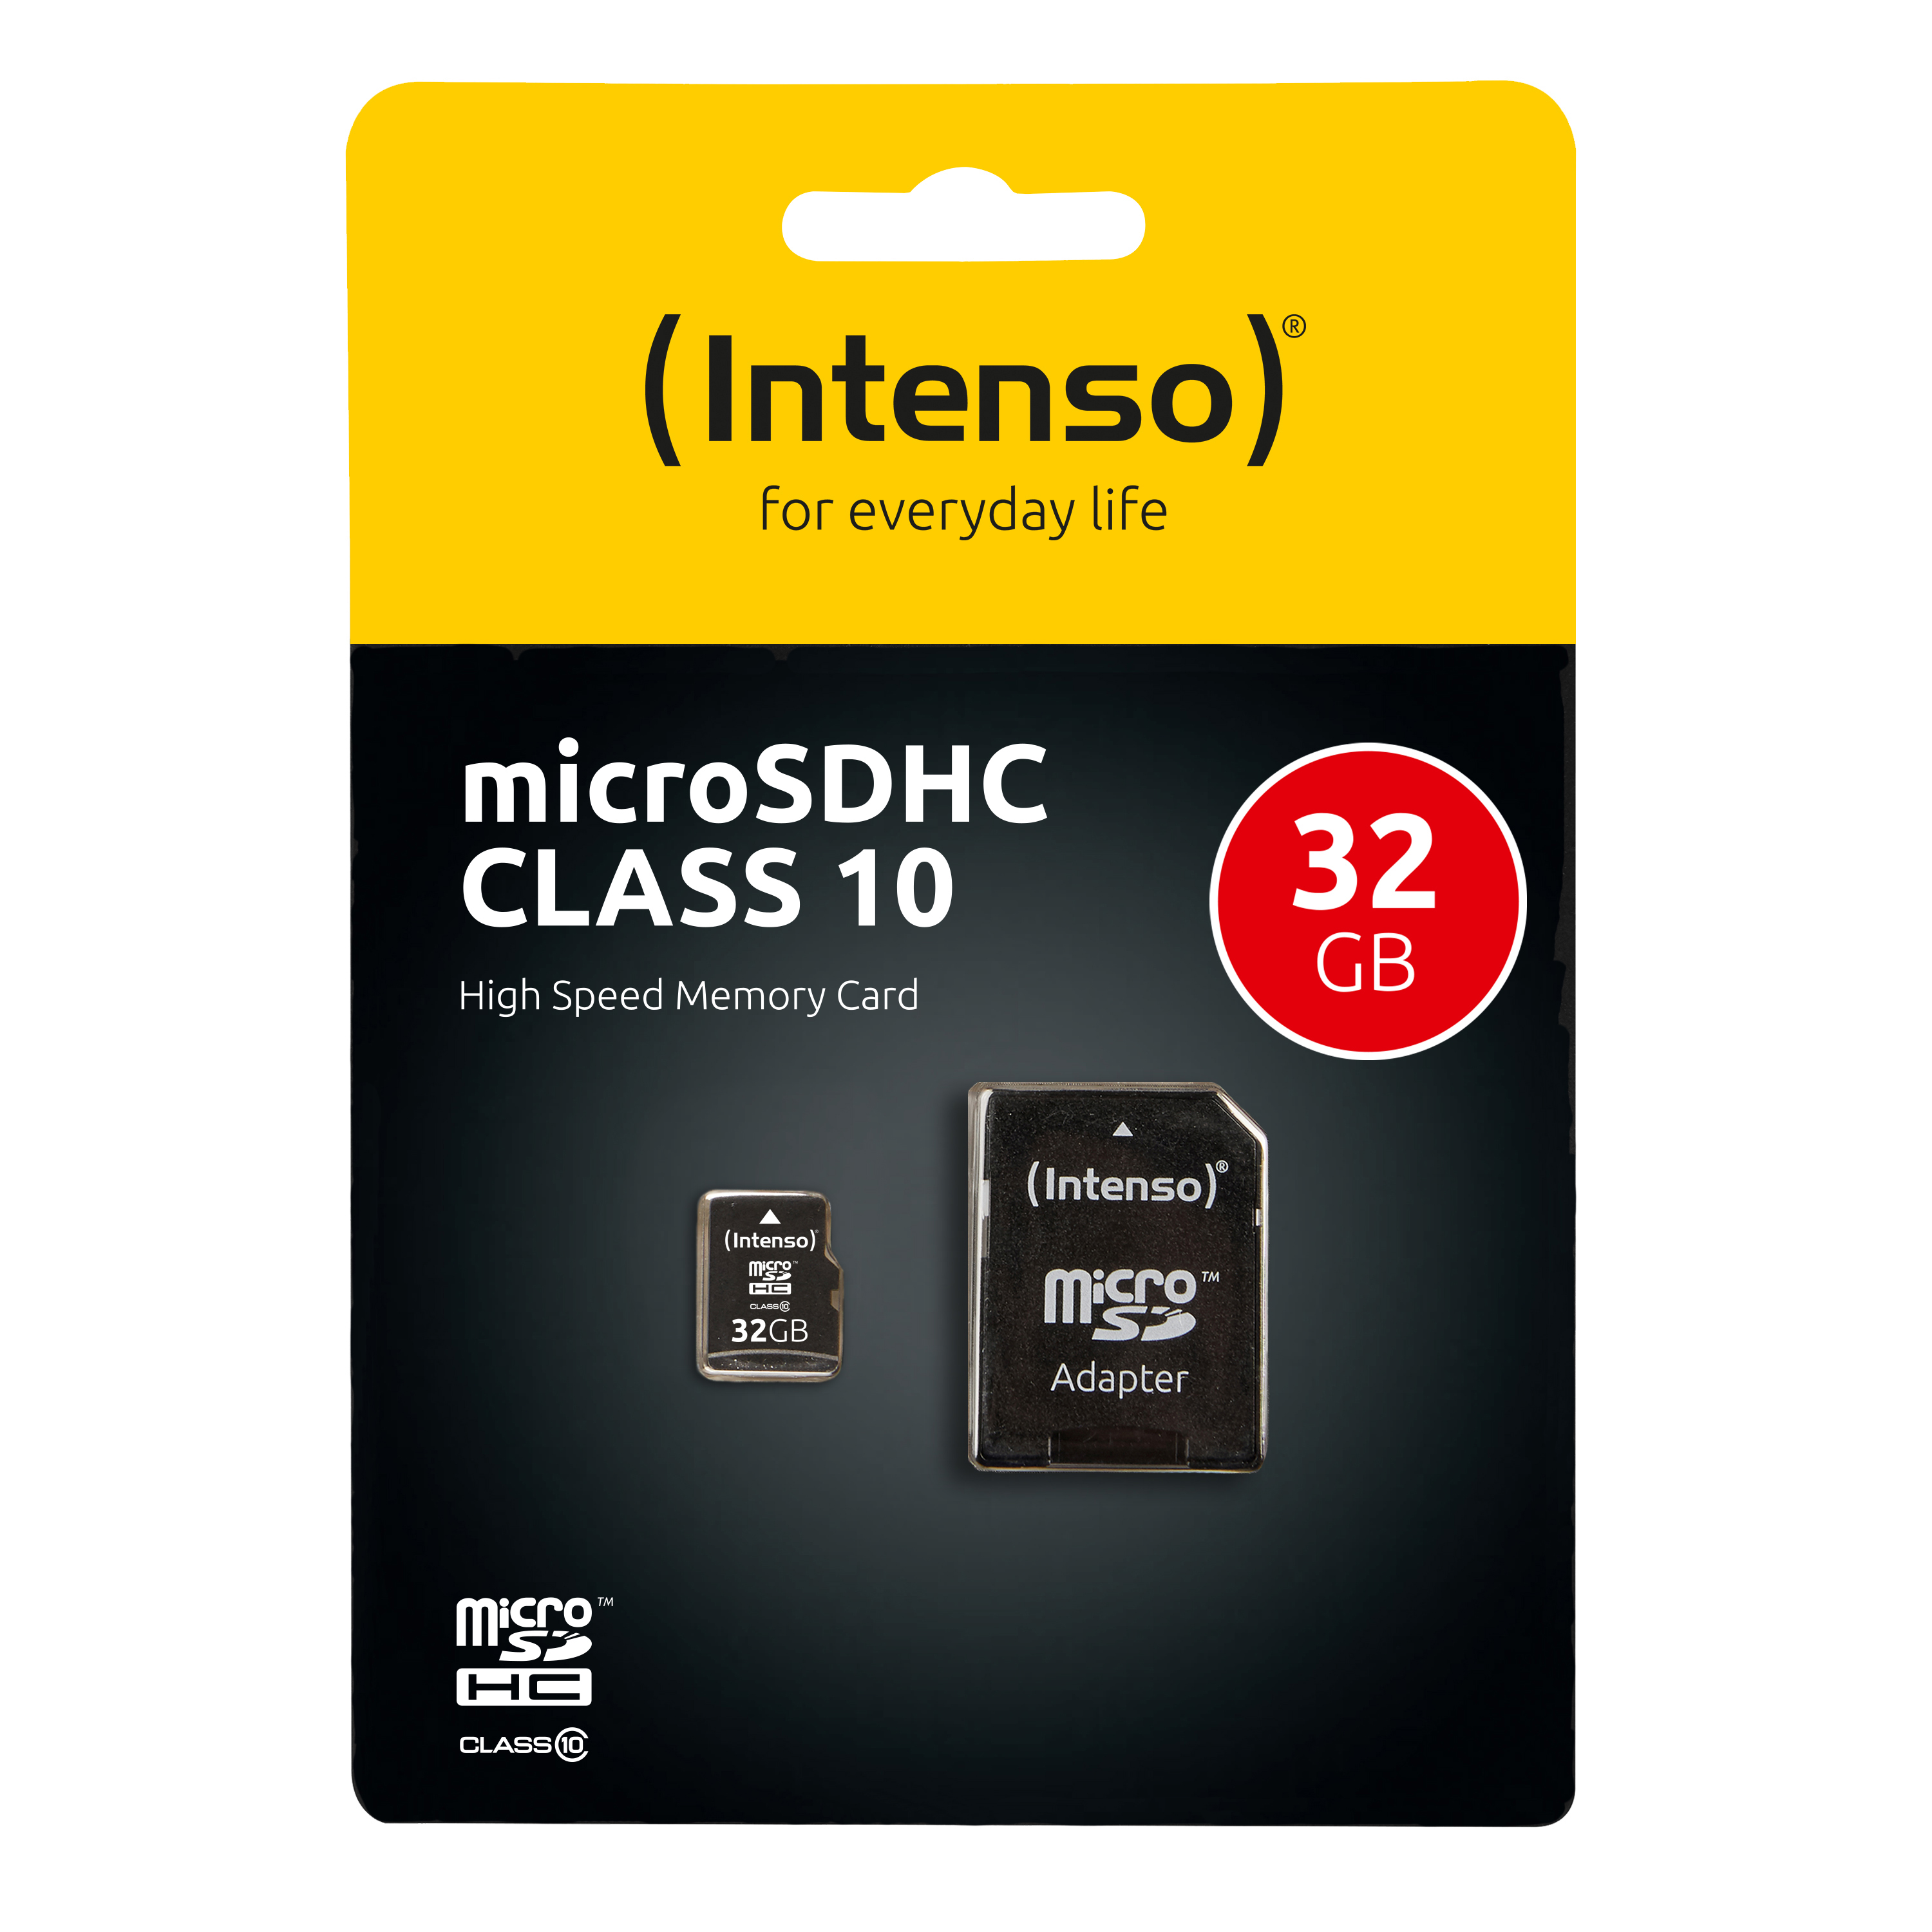 mit SD Adapter Genericc 256GB Micro SDXC Speicherkarte Class 10 für Smartphones und Tablets, 